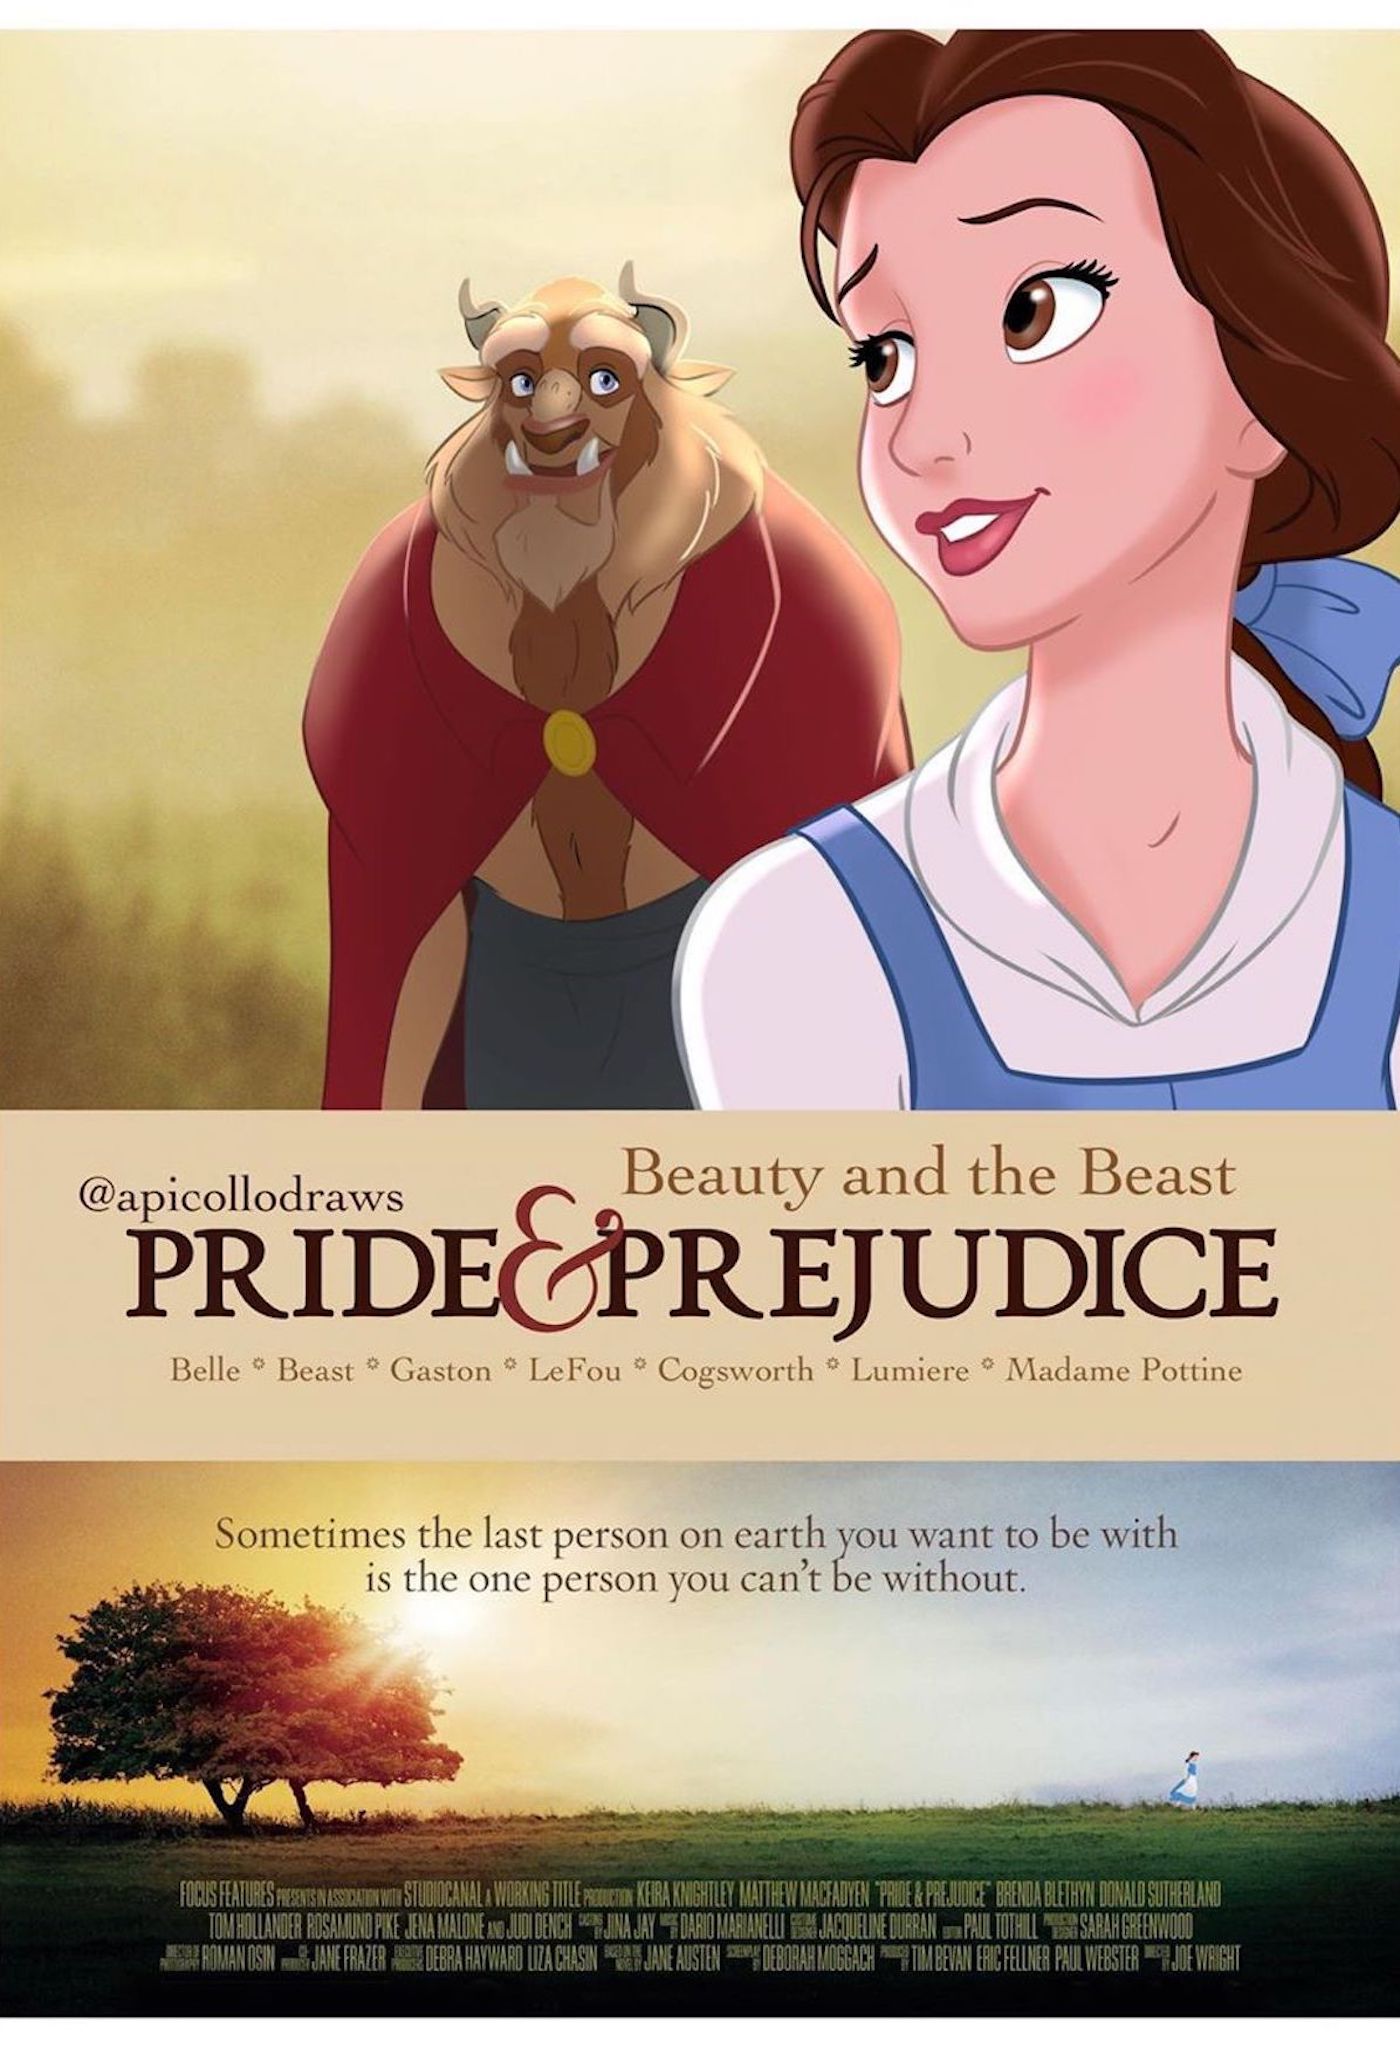 Les affiches de films avec des personnages Disney